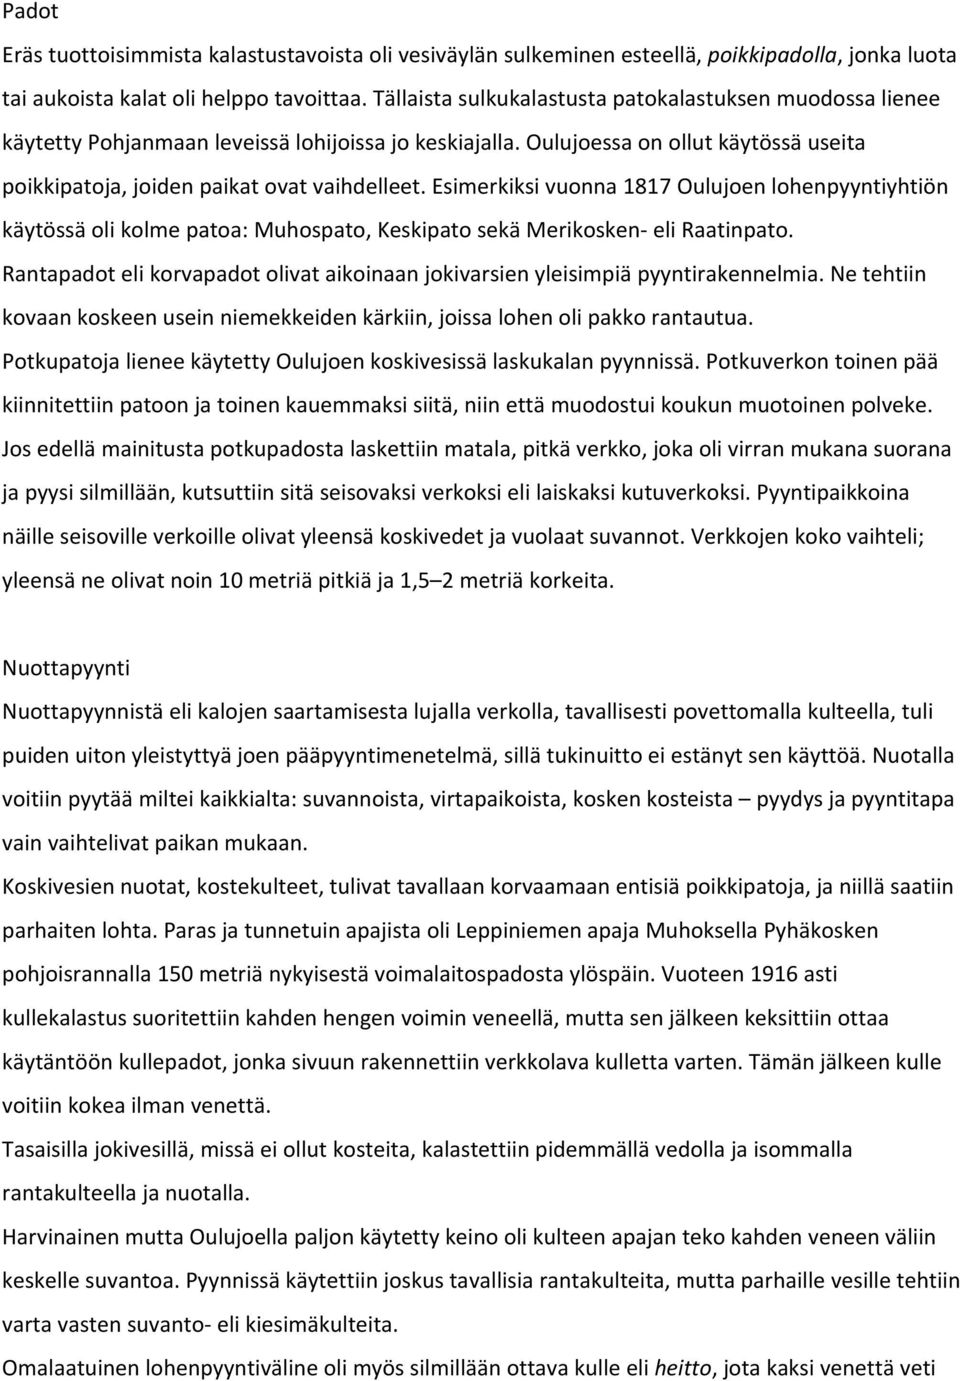 Esimerkiksi vuonna 1817 Oulujoen lohenpyyntiyhtiön käytössä oli kolme patoa: Muhospato, Keskipato sekä Merikosken eli Raatinpato.